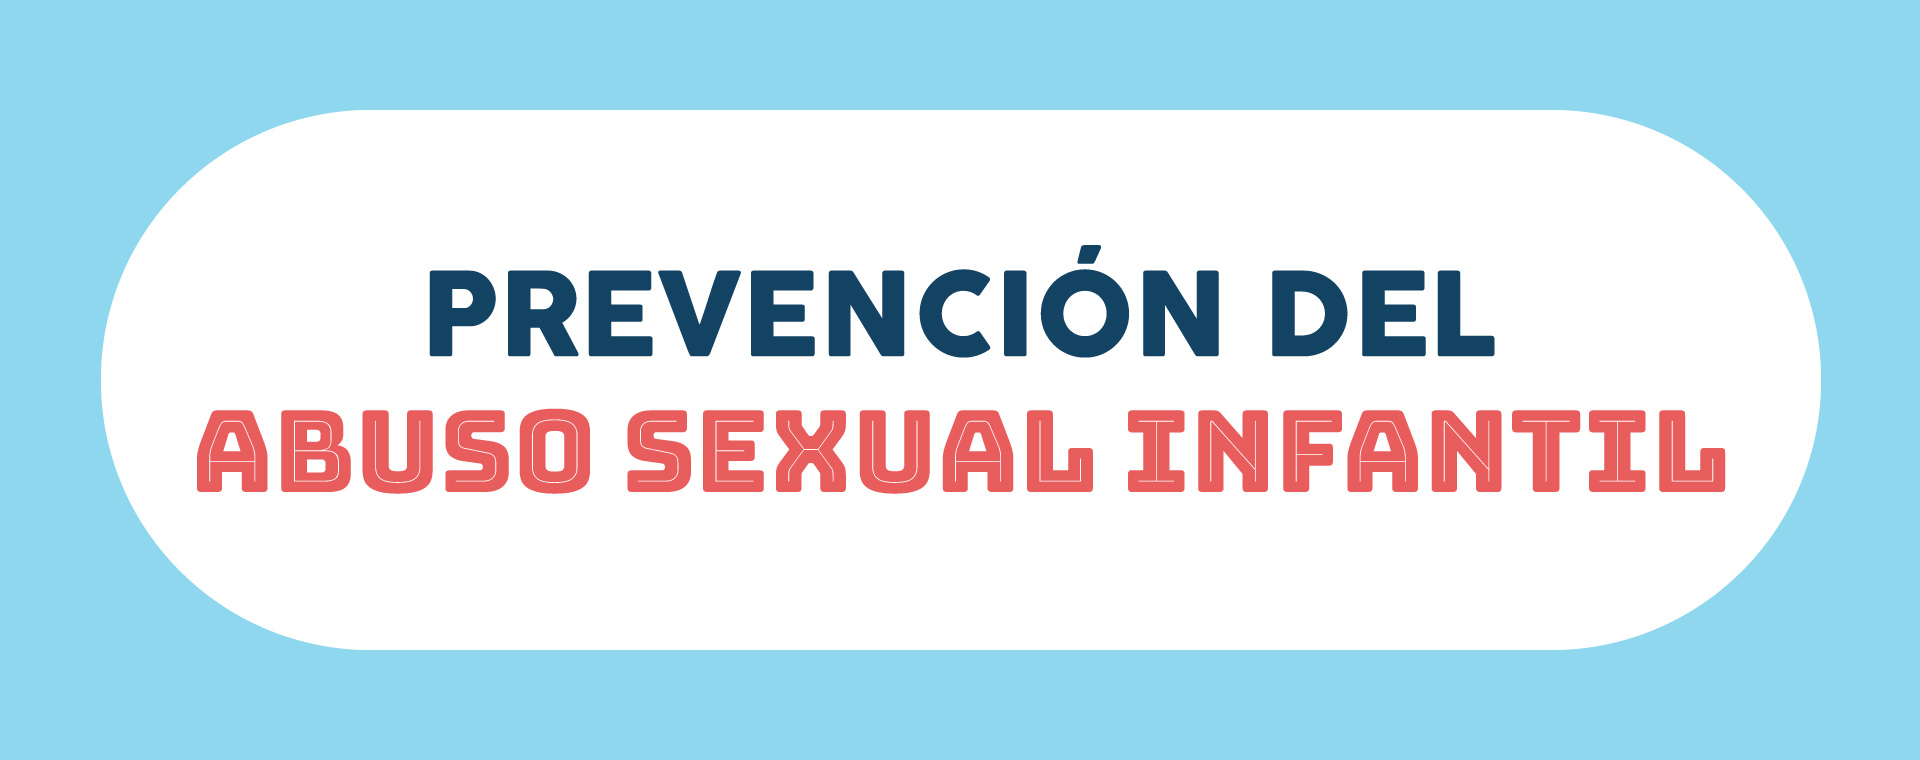 Taller de Prevención del Abuso Sexual Infantil en el Planetario. Tuxtla Gutiérrez, Chiapas.